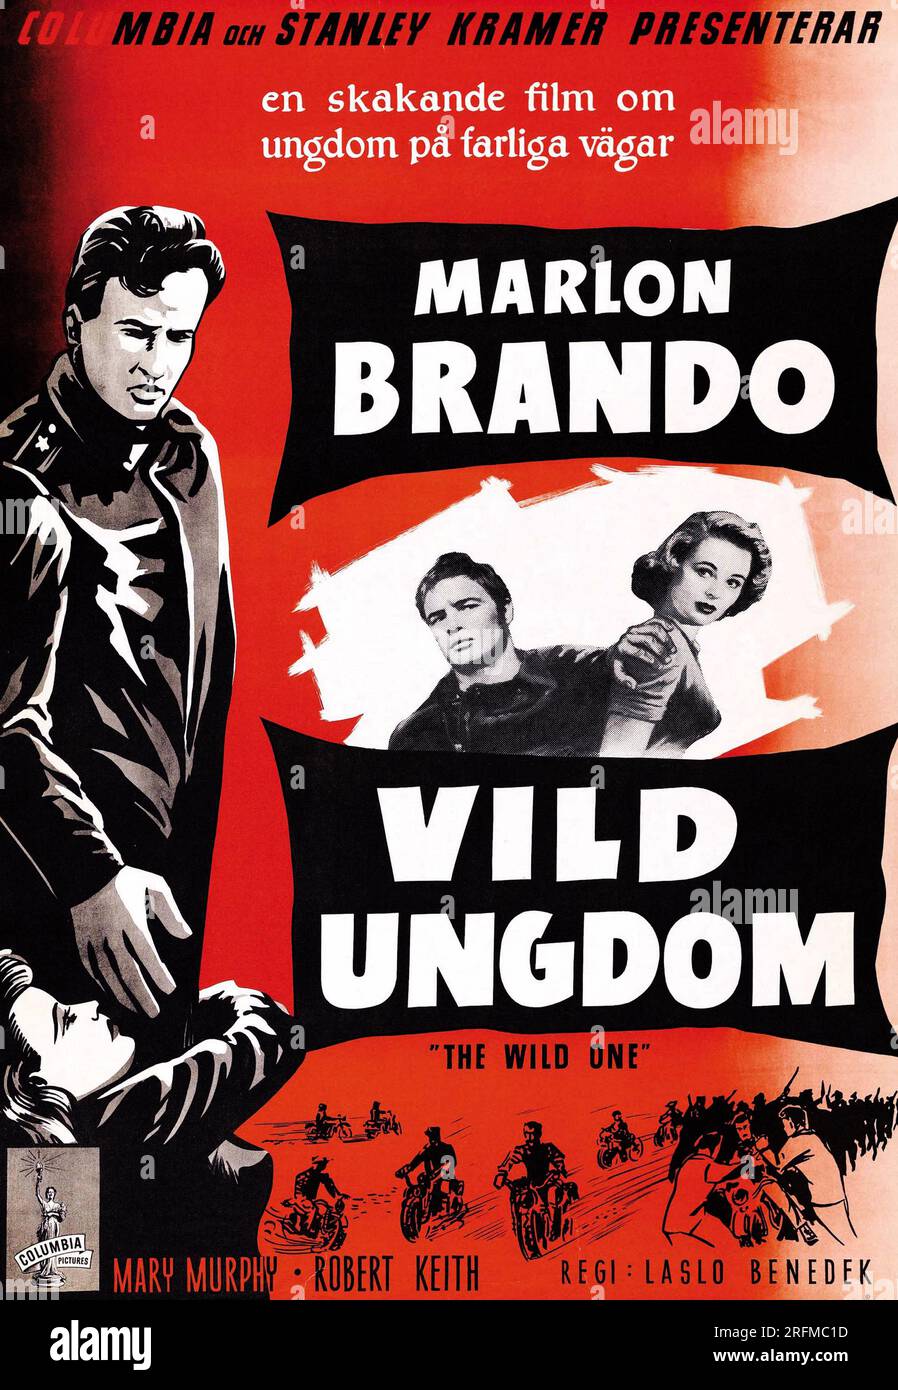 Vild ungdom' (The Wild One) è un film statunitense del 1953 diretto da Marlon Brando. Foto Stock